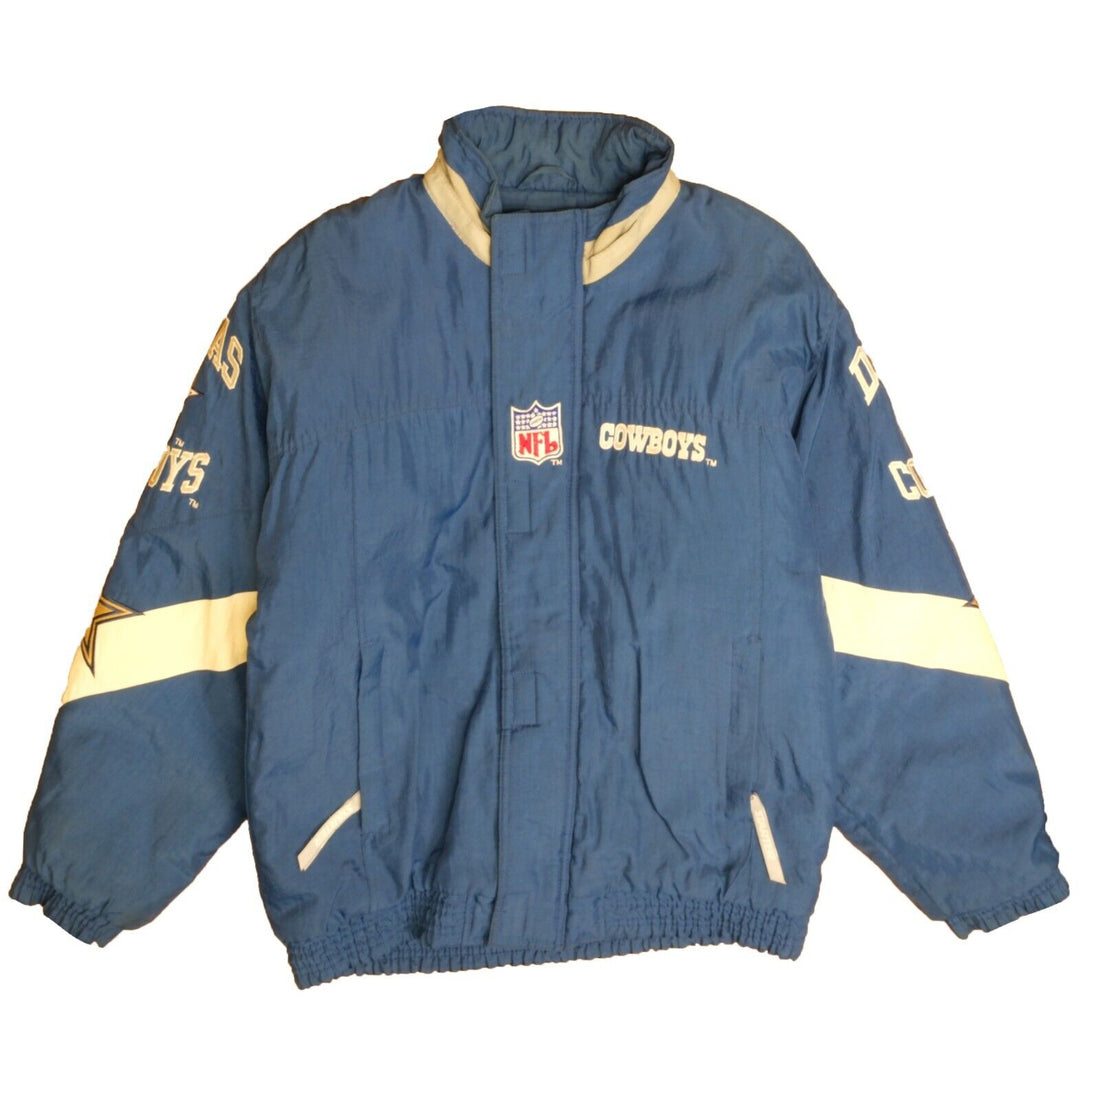 Vintage Dallas Cowboys Starter Puffer Jacket Size Large Blue 90s NFL